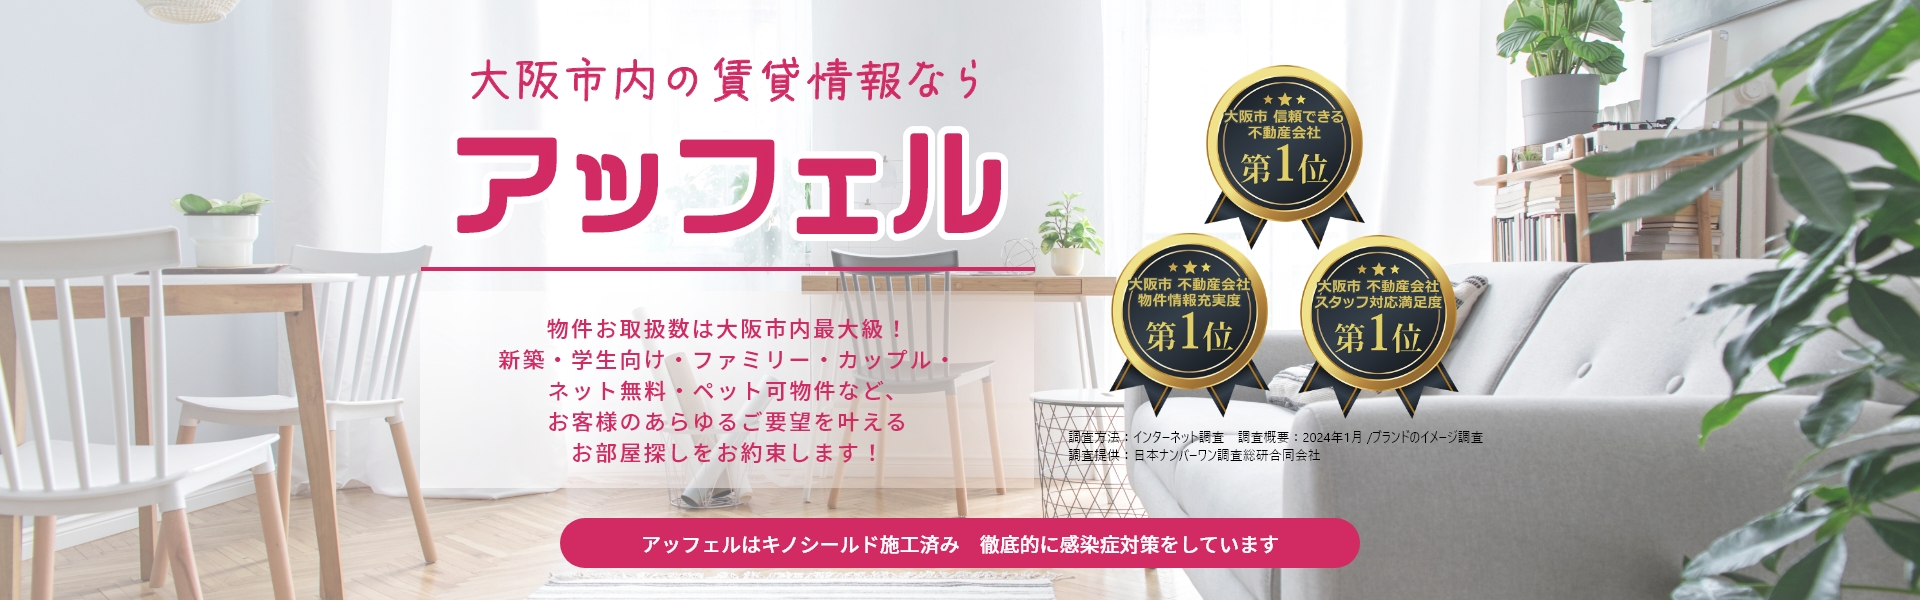 大阪市内の賃貸情報ならアッフェル 物件お取扱数は大阪市内最大級！新築・学生向け・ファミリー・カップル・ネット無料・ペット可物件など、お客様のあらゆるご要望を叶えるお部屋探しをお約束します！